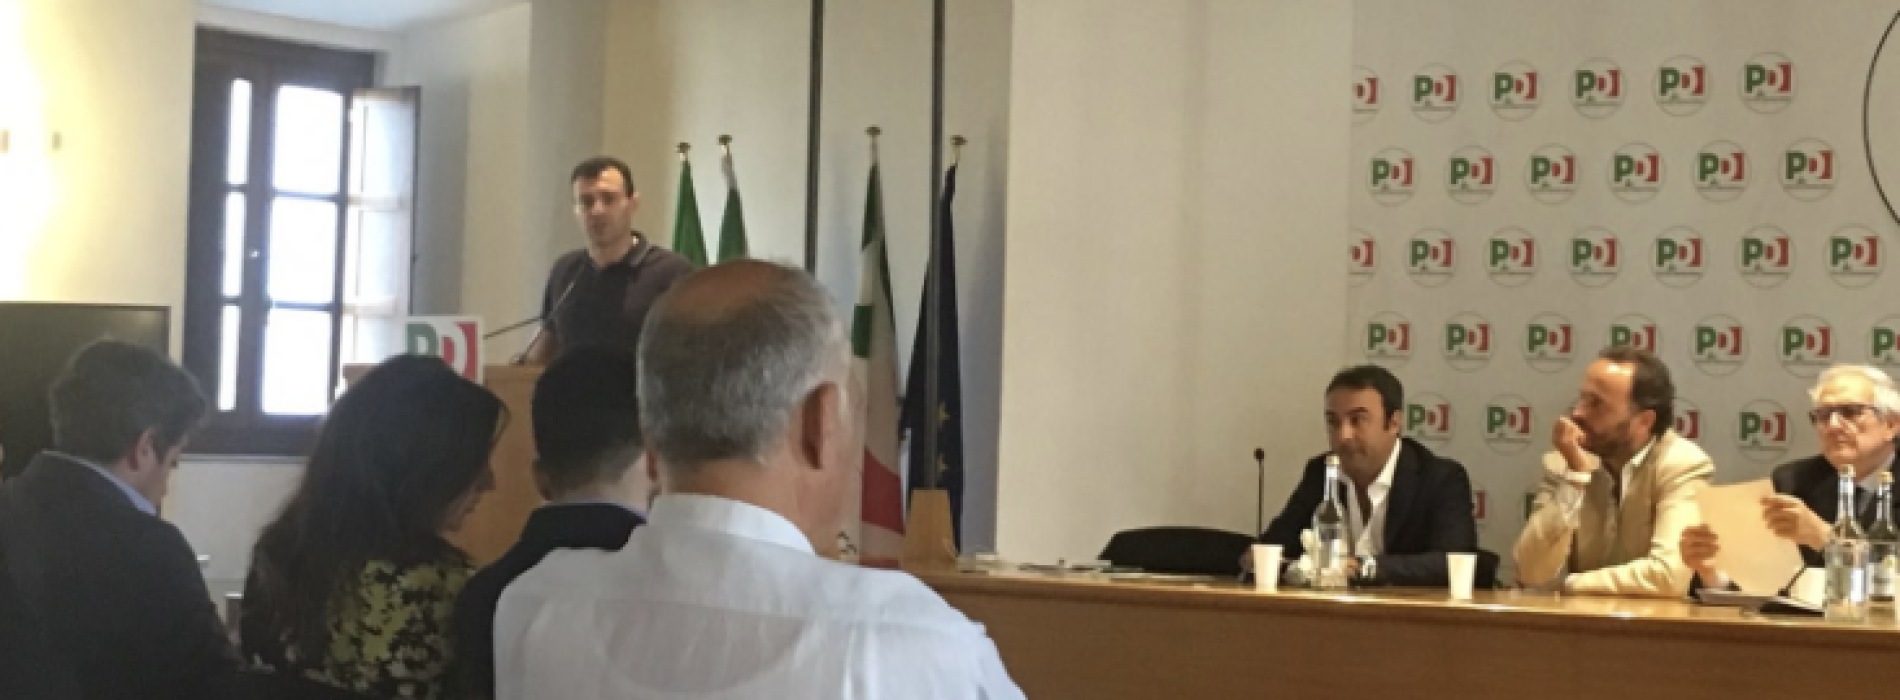 A Roma l’Assemblea Nazionale di Lab Dem. Gianni Pittella interviene da leader europeo